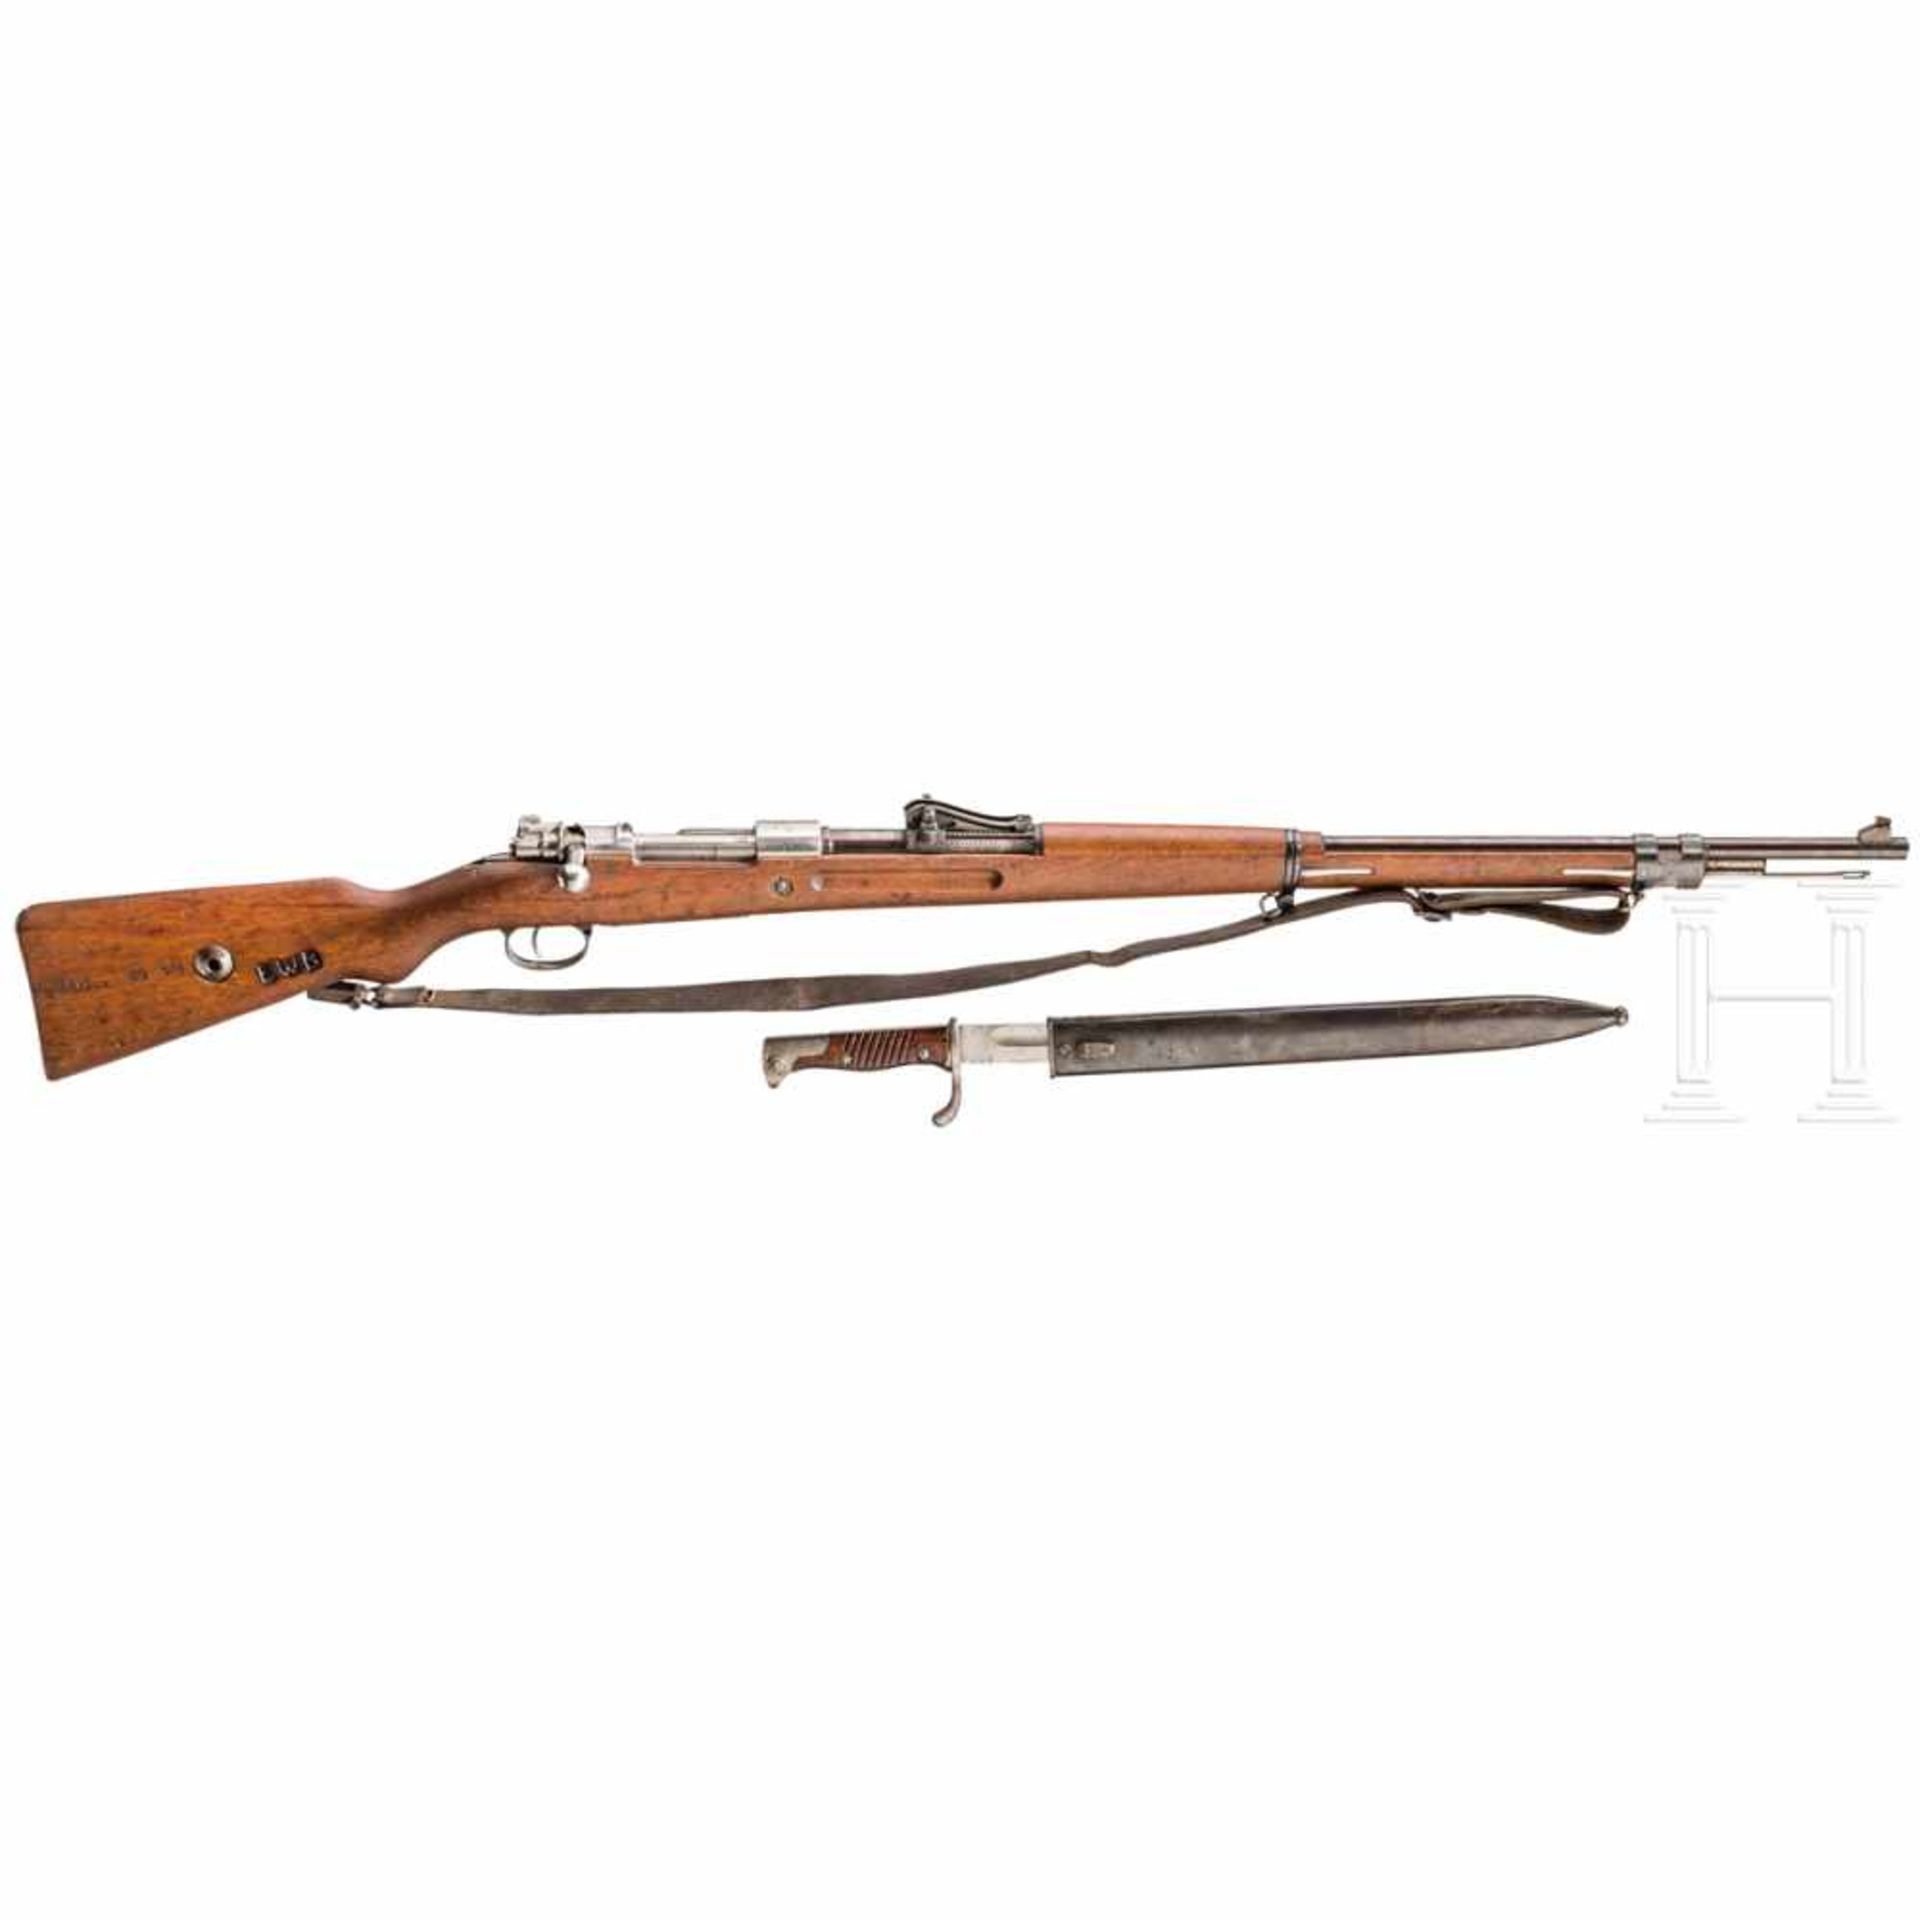 Gewehr 98, Amberg 1918, EWB, mit BajonettKal. 8x57 IS, Nr. 9104, Nummerngleich. Spiegelblanker